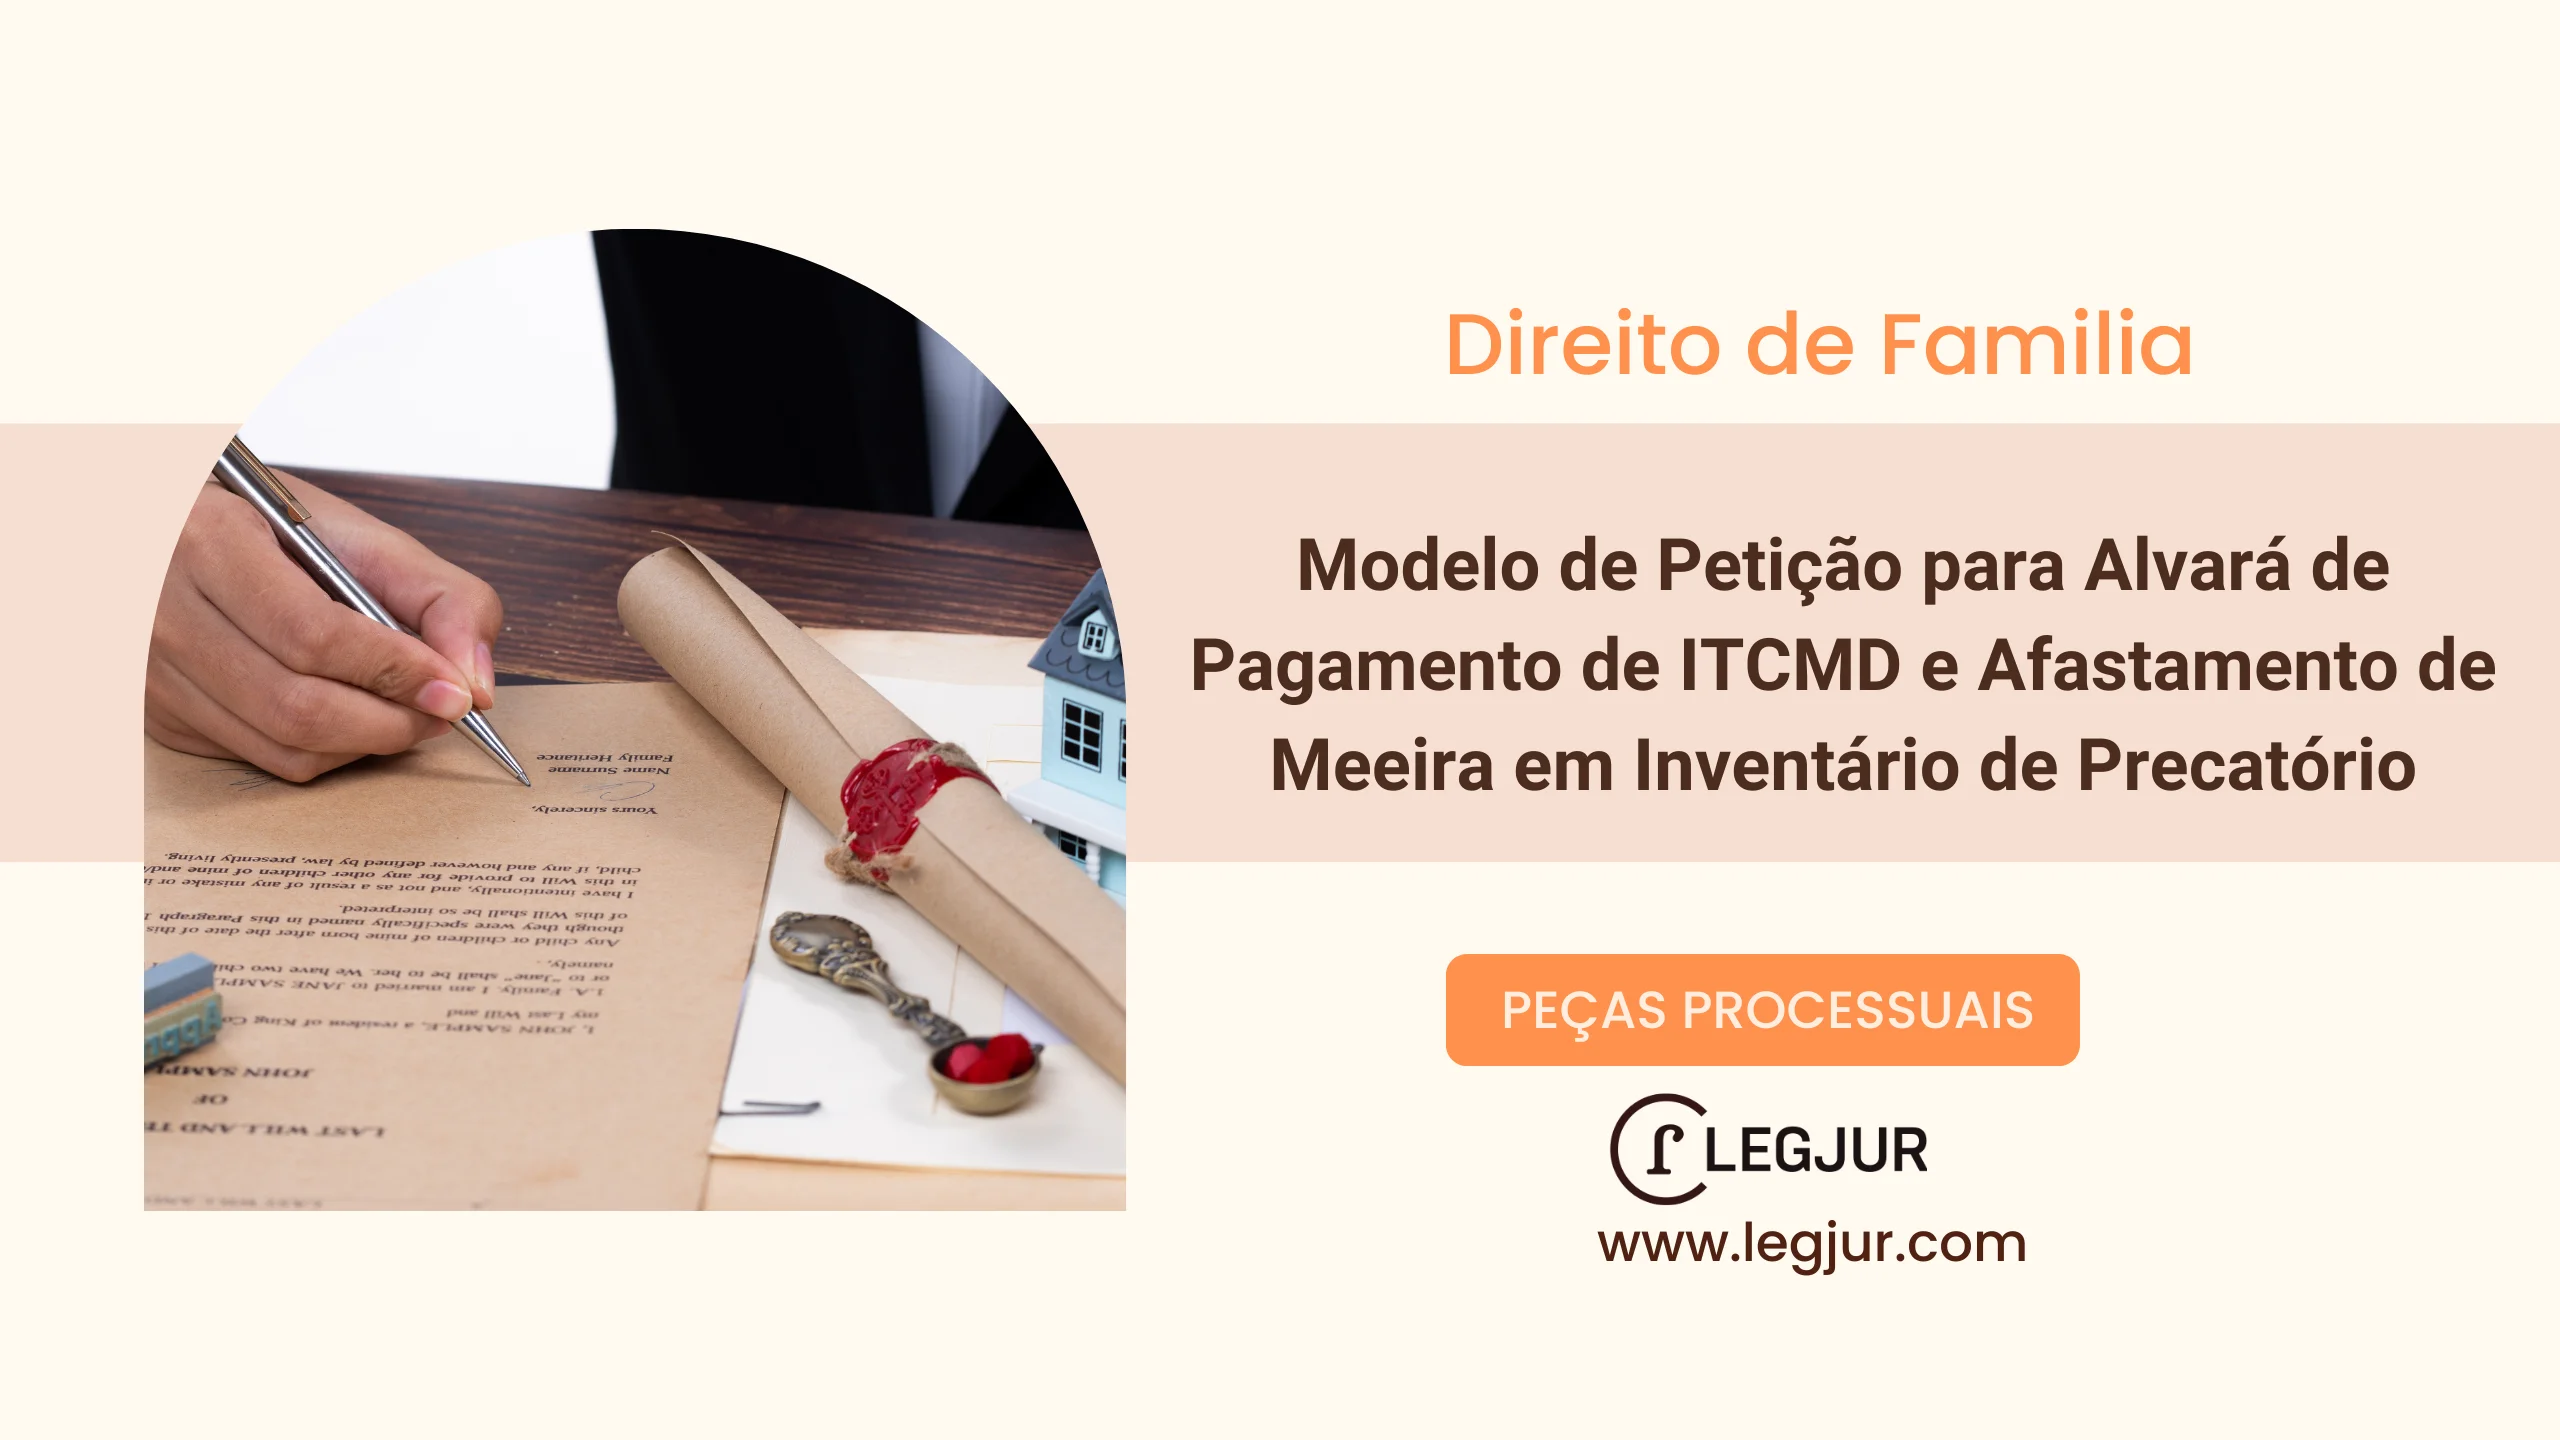 Modelo de Petição para Alvará de Pagamento de ITCMD e Afastamento de Meeira em Inventário de Precatório